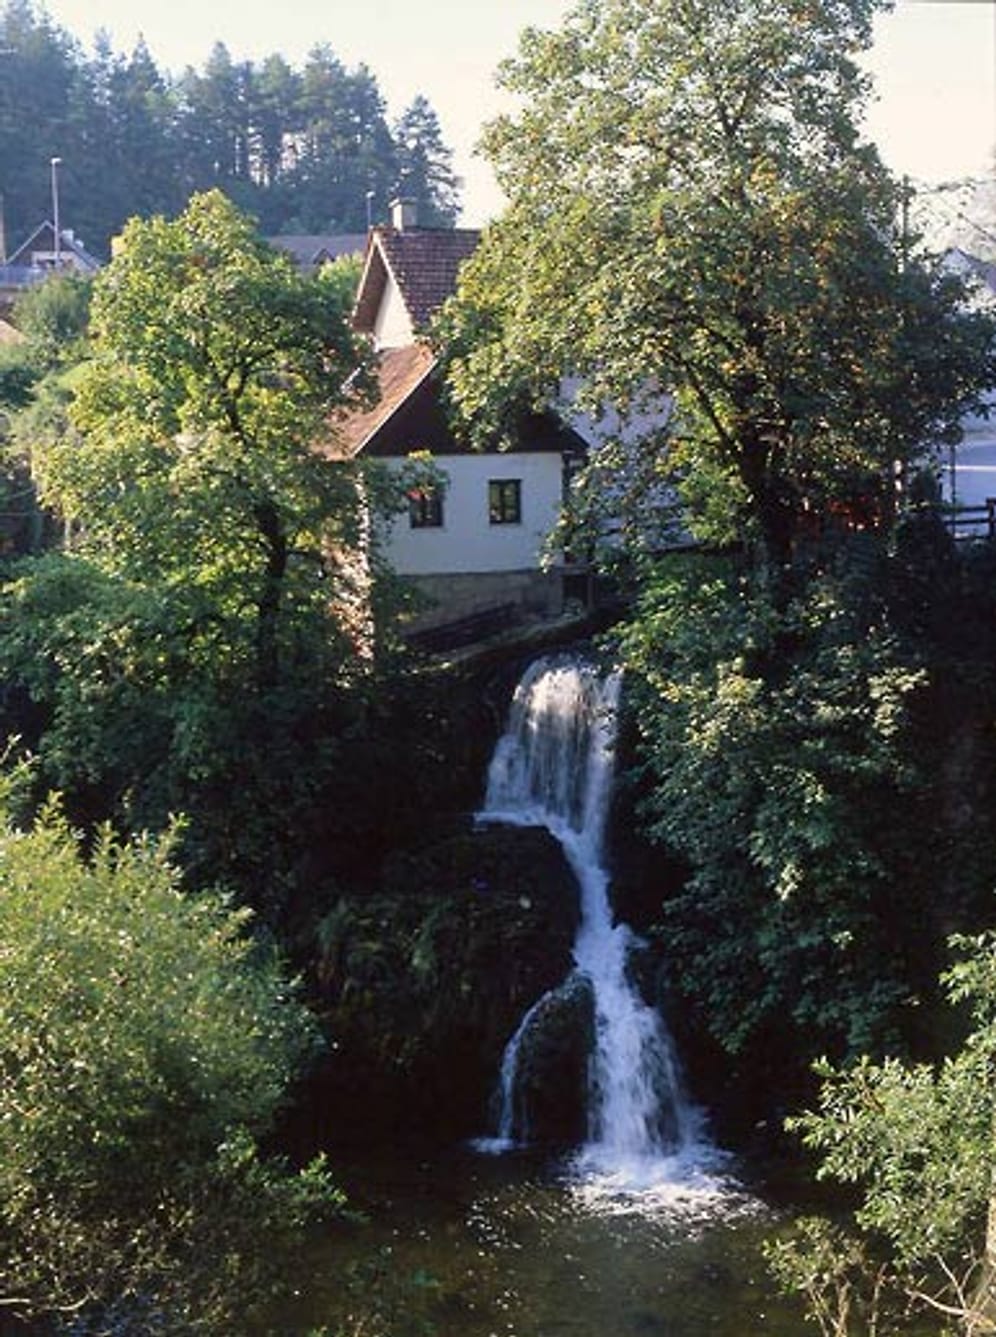 Im Herzen Kroatiens, nahe der kleinen Stadt Slunj, befindet sich der alte Rastoke-Komplex. Besucher sehen hier traditionelle, landestypische Architektur mit historischen Wassermühlen n in einer durch den Fluss Slunjcica geformten Landschaft.